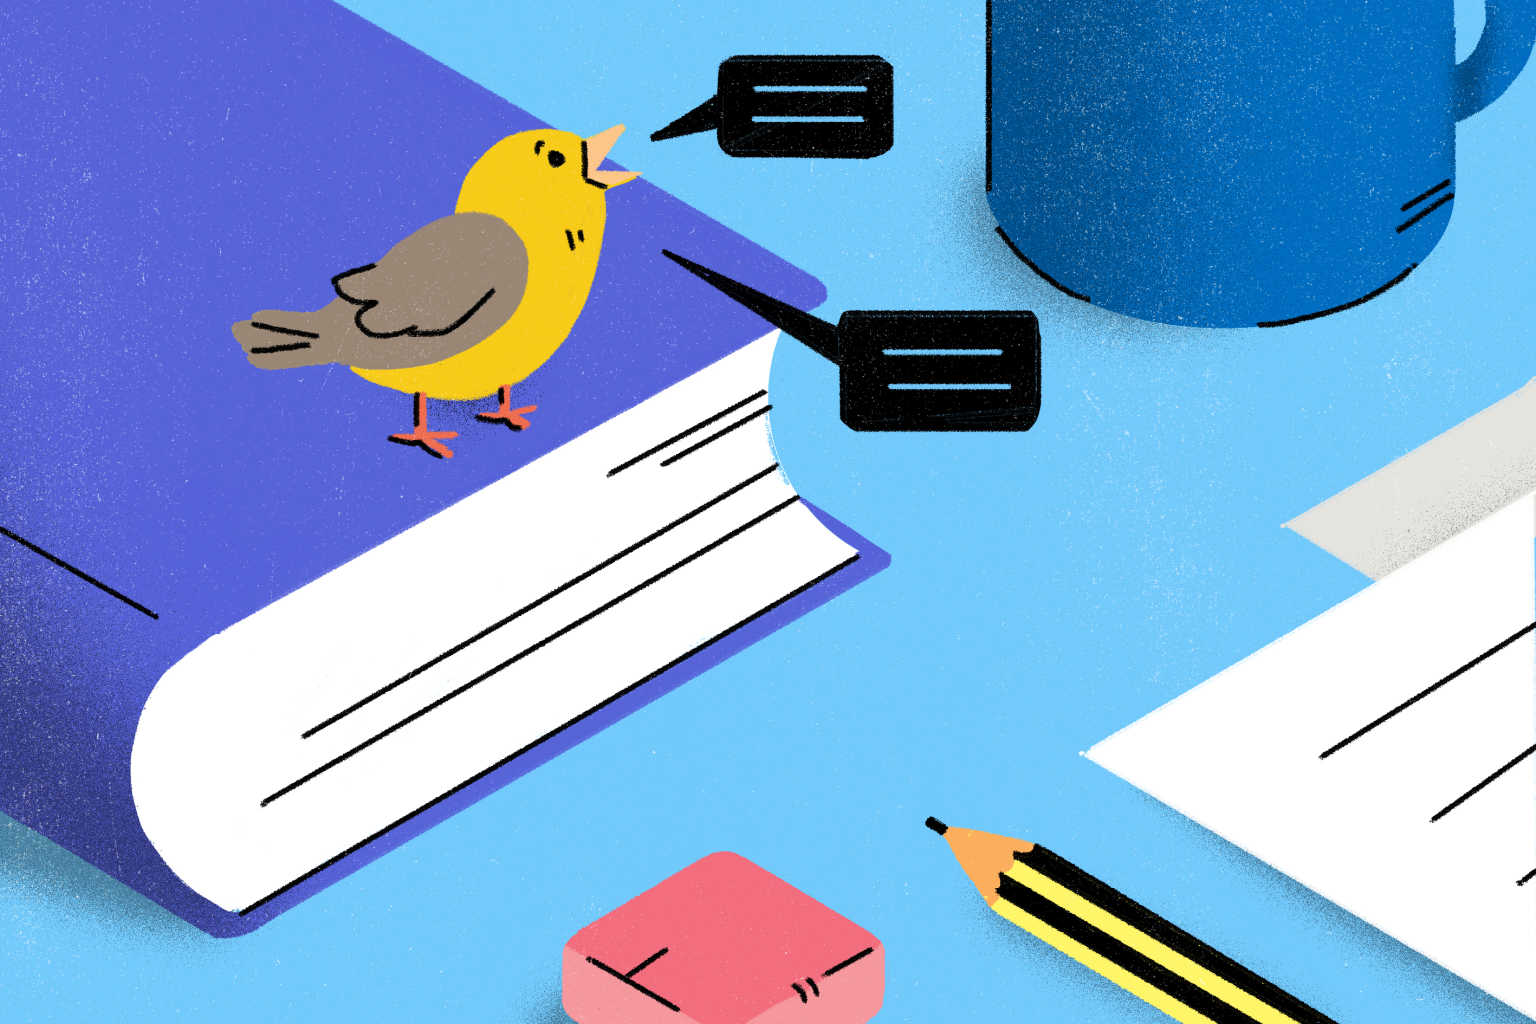 twitter-bird-tweets-on-book-illustration